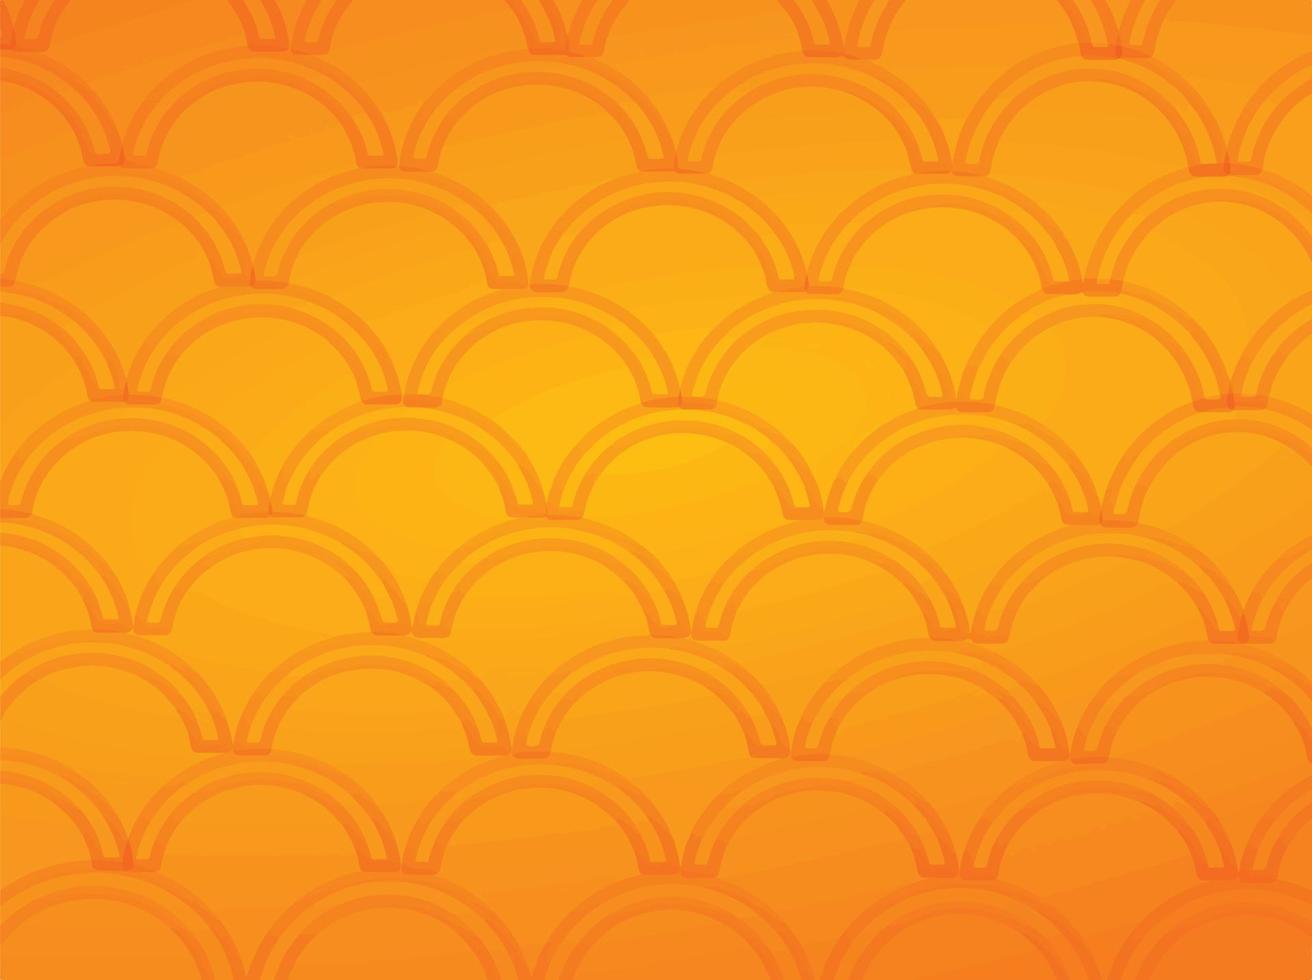 orange rot golden gelb farbe welle rund abstrakt muster vintage retro kreis geometrisch kreativ grafikdesign mode dekoration textur stoff element drucken kunst zeichnung schön vektor